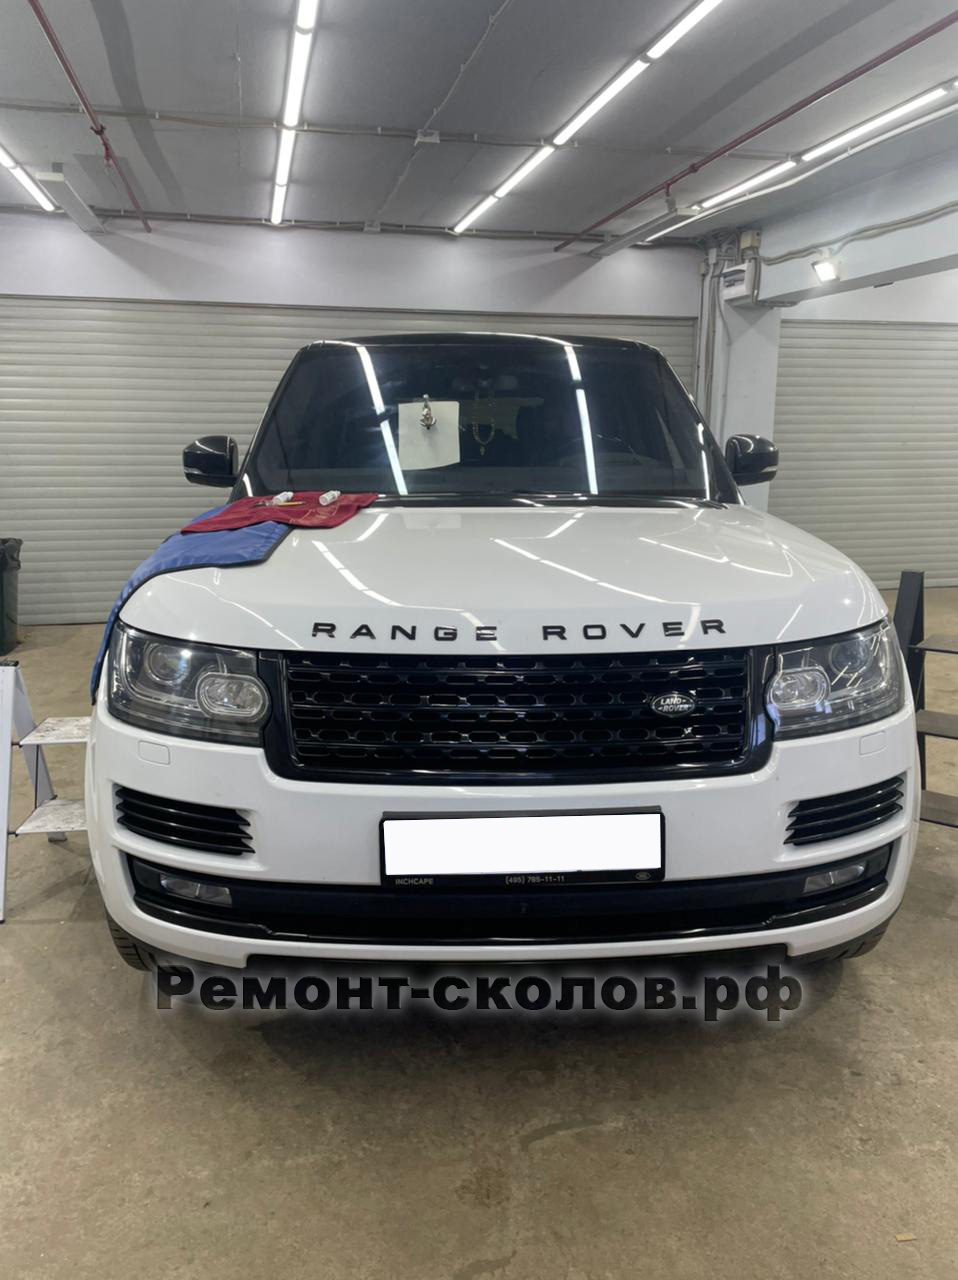 Range Rover ремонт лобового стекла в Москве